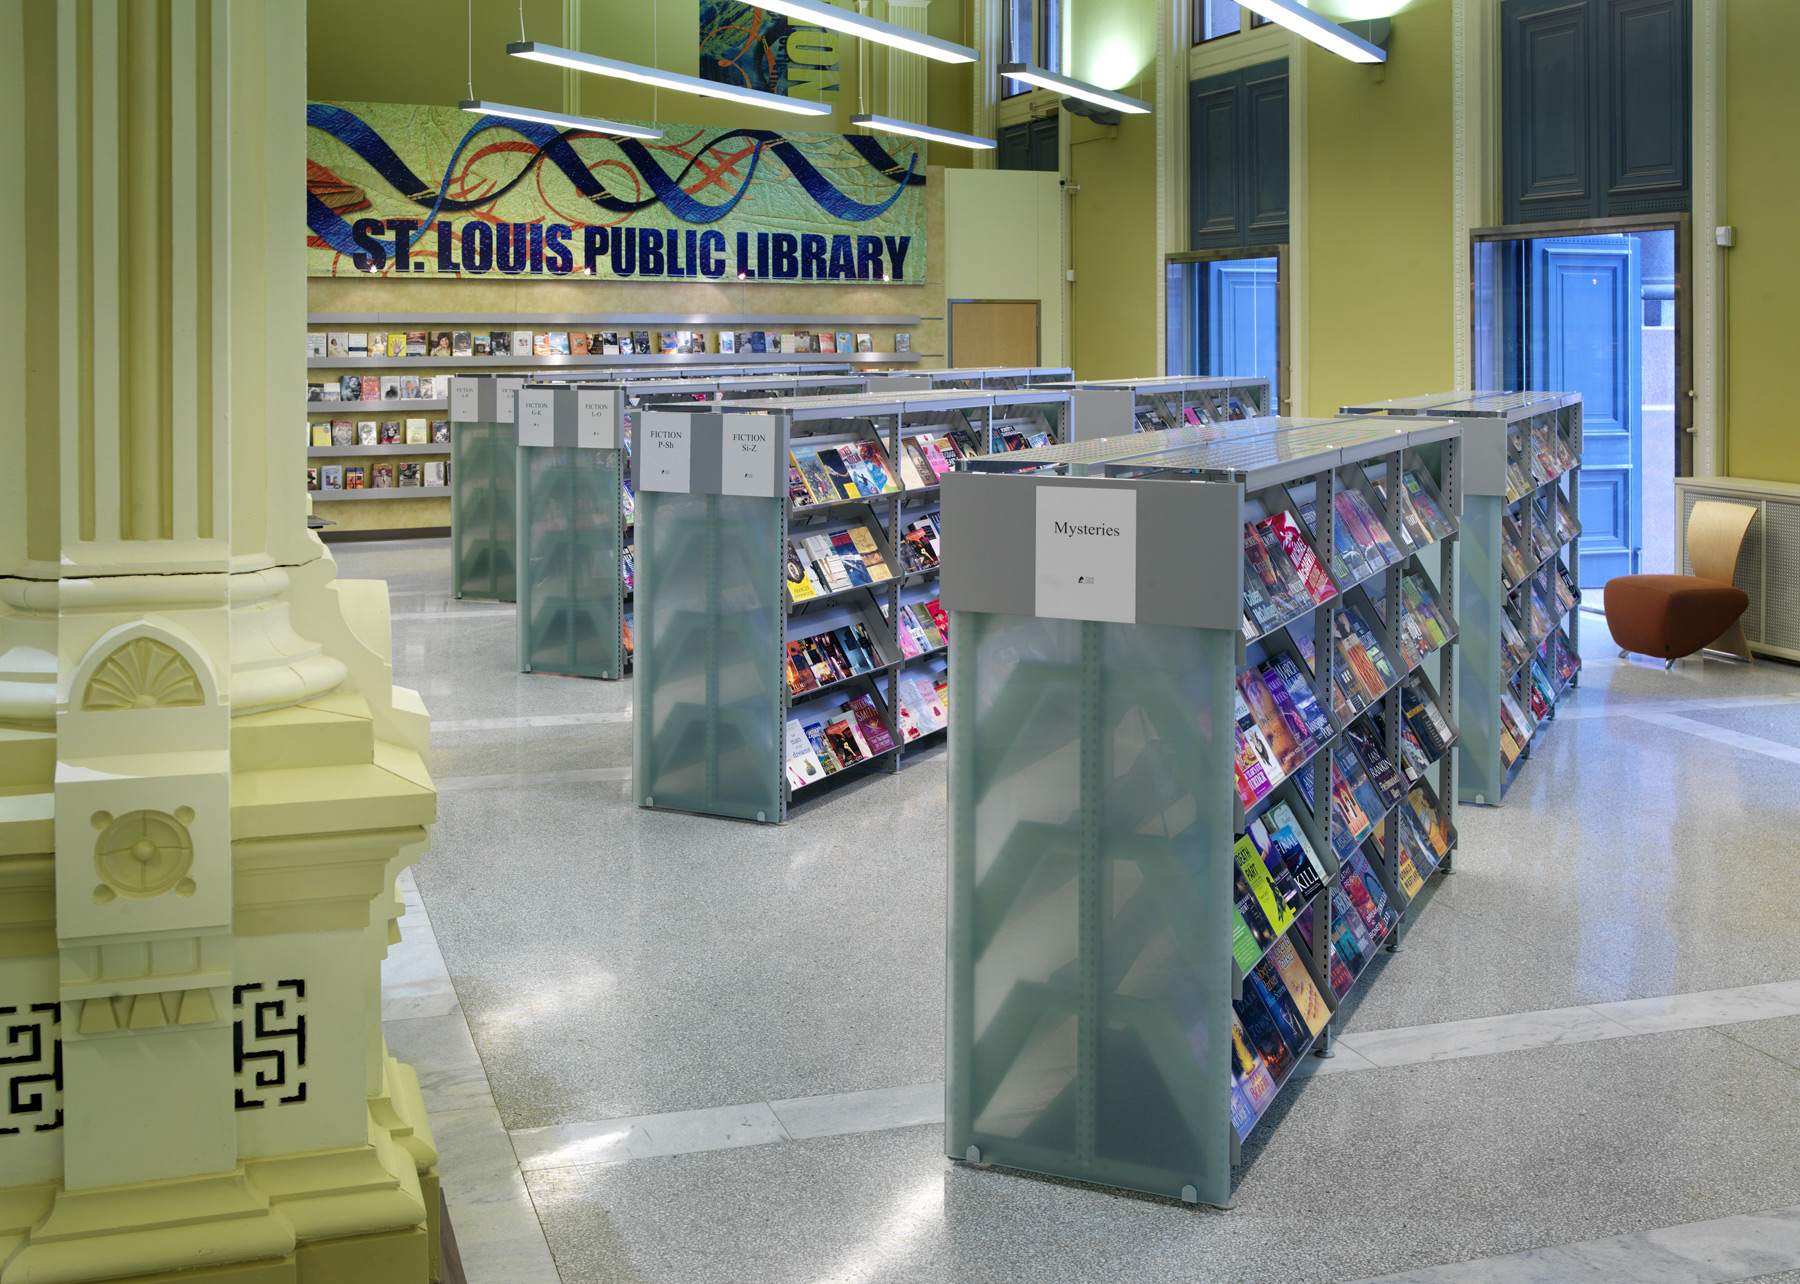 St. Louis Public Library